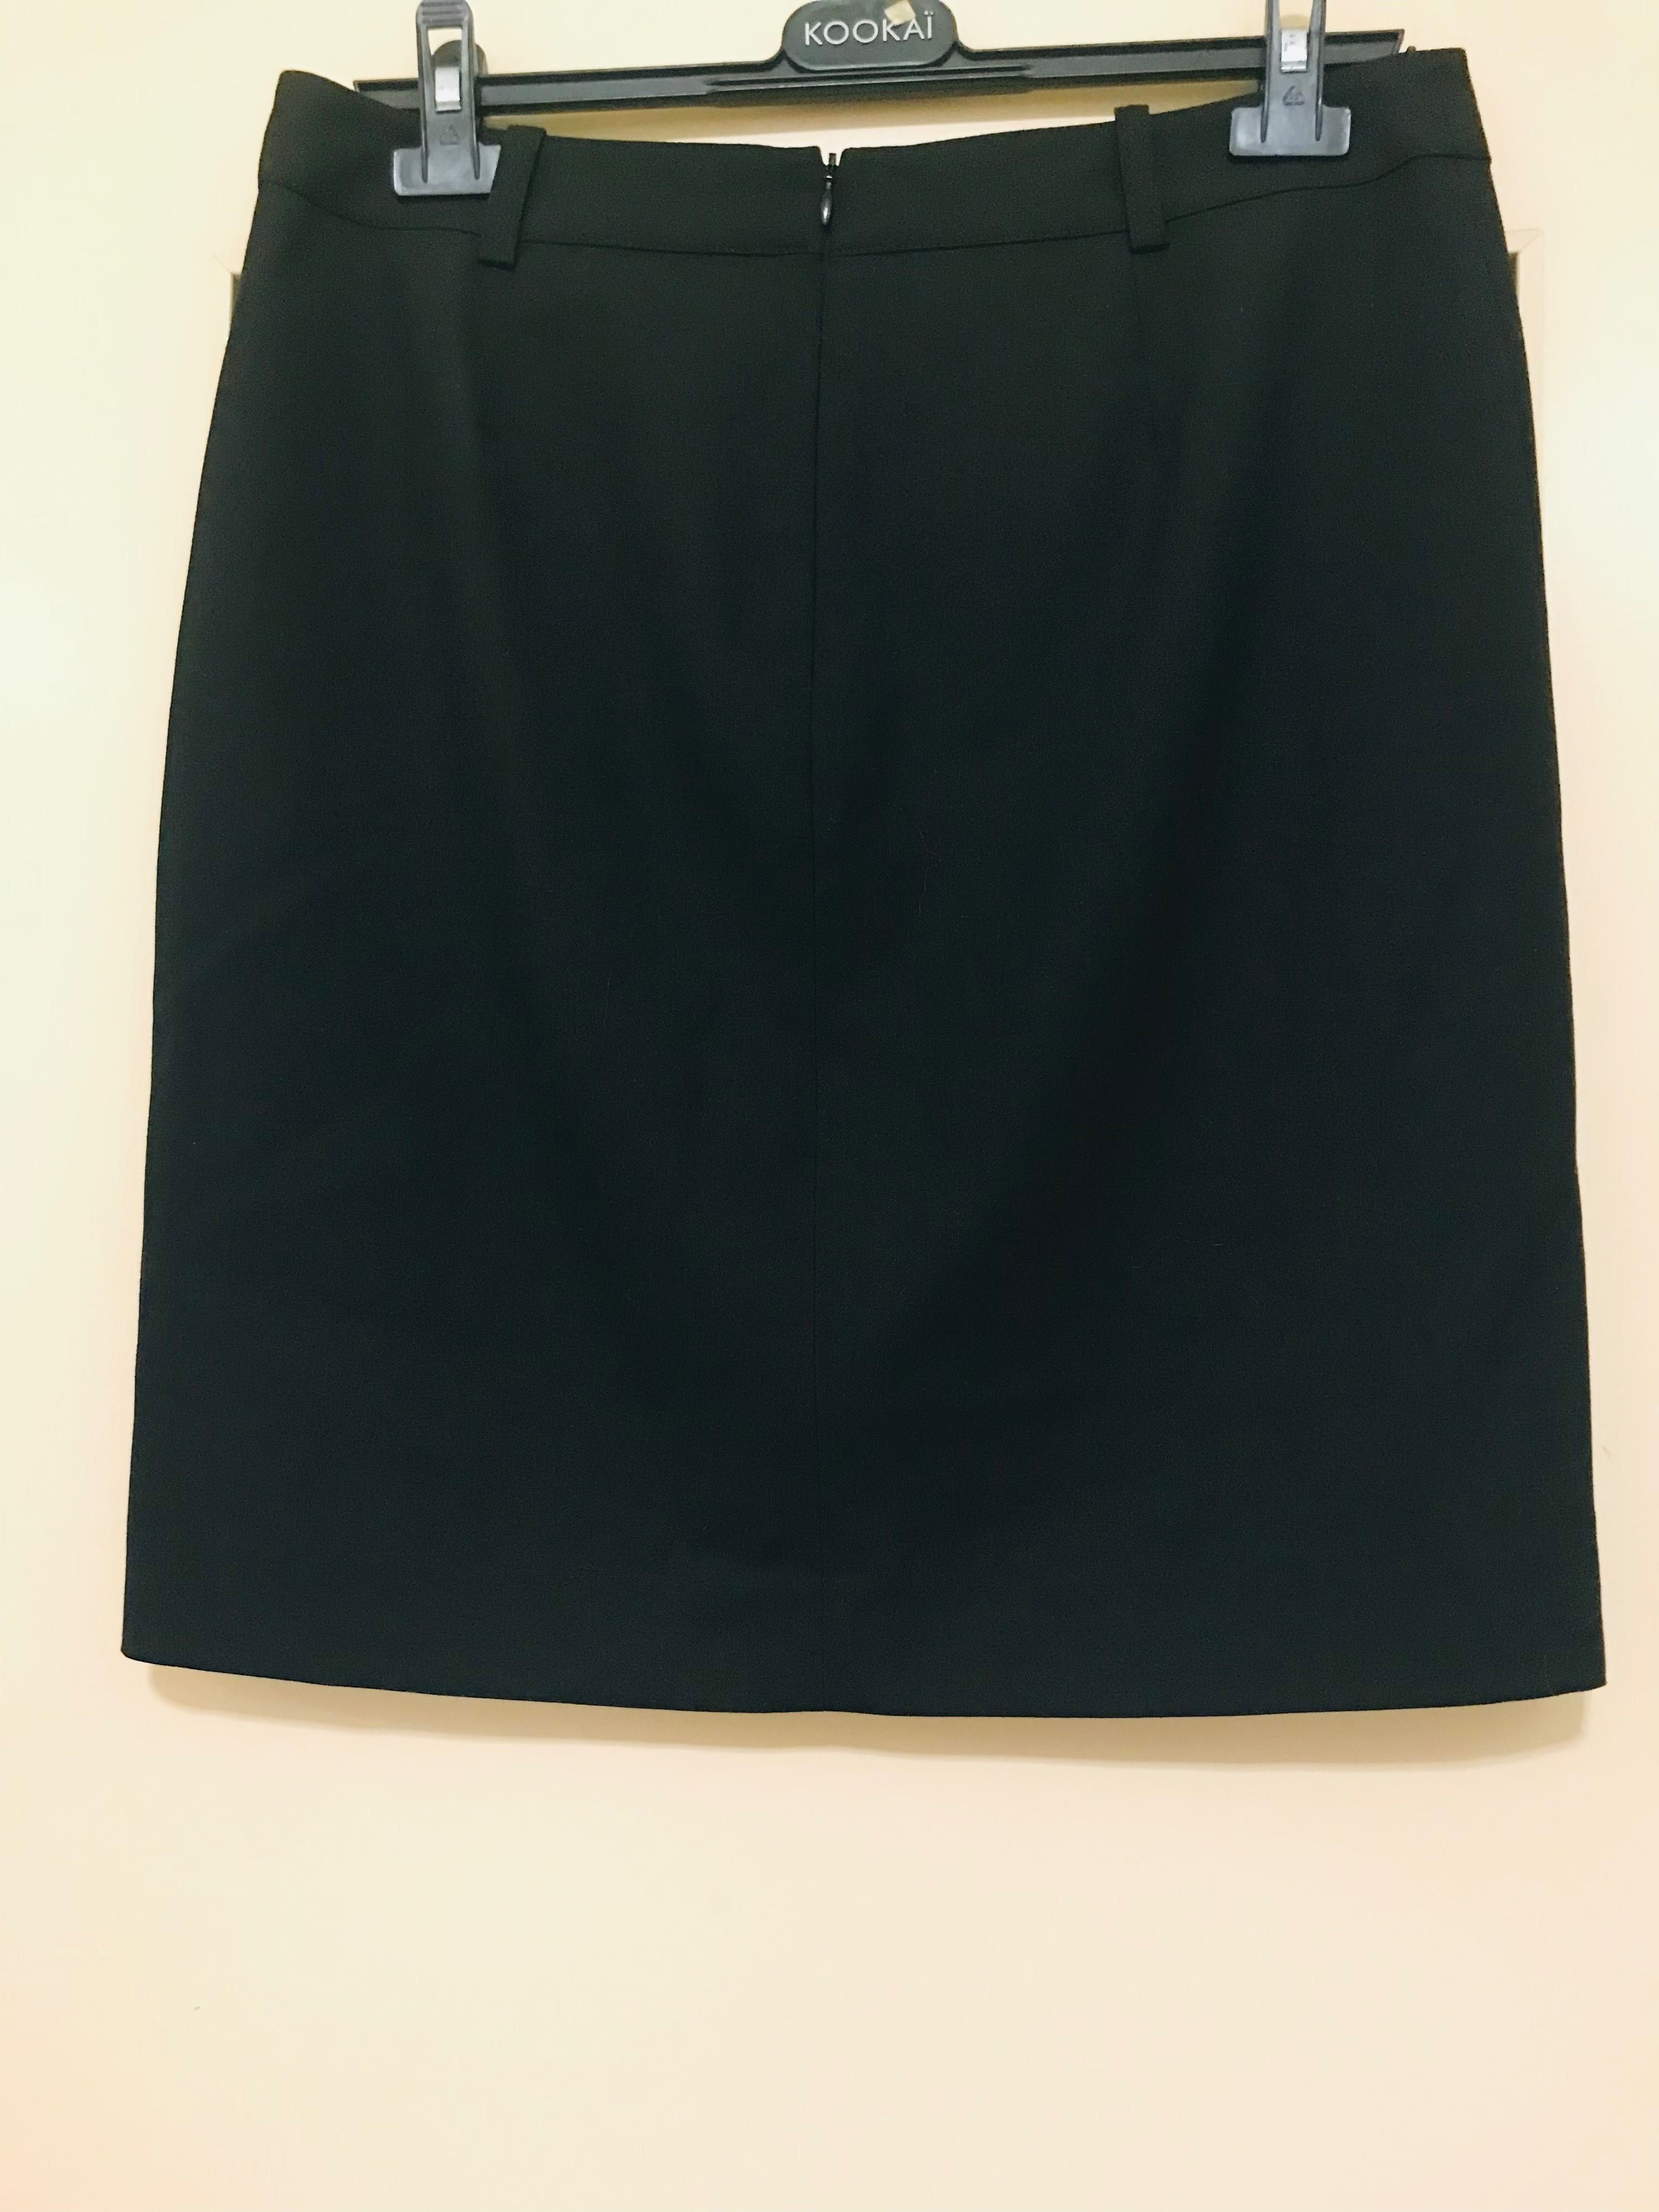 Mexx spódnica czarna klasyczna elegancka guziczki biurowa